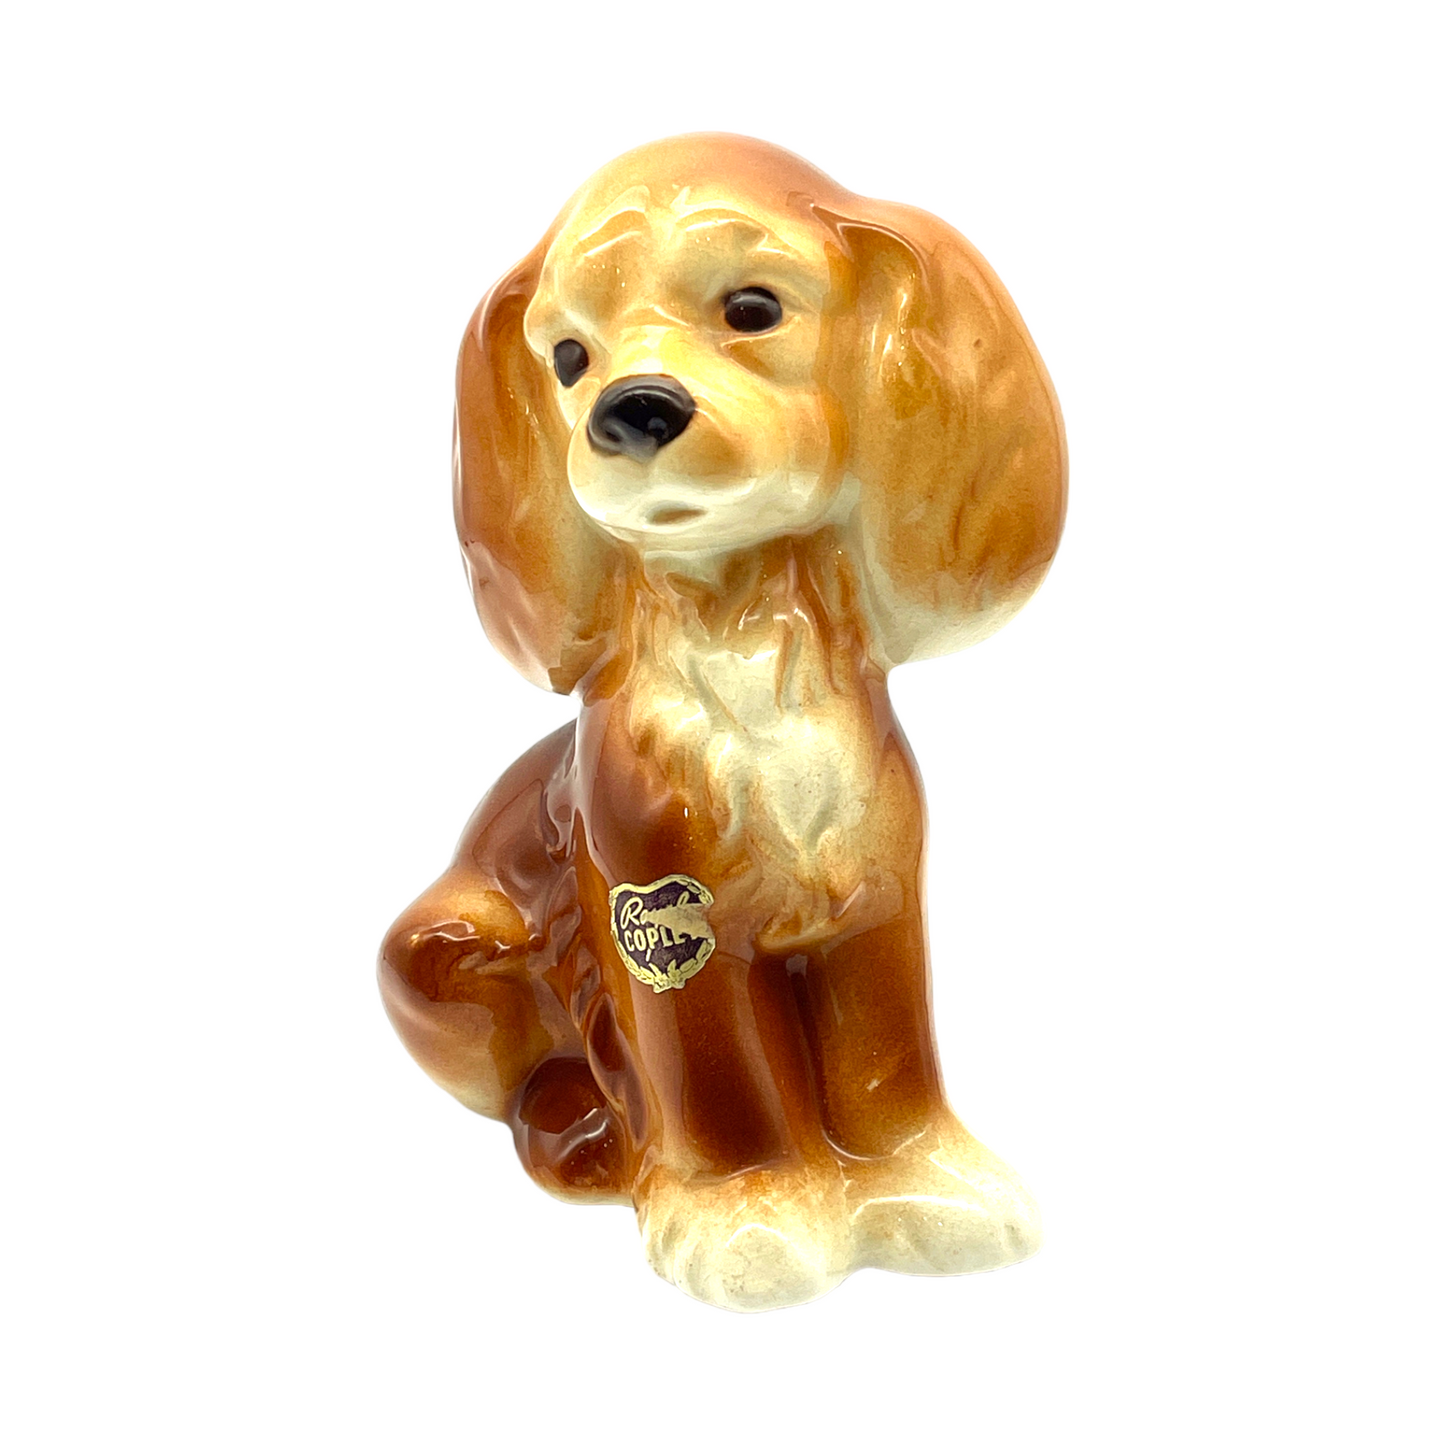 Royal Copley - Cocker Spaniel Puppy Figurine - Vintage - 6.5"